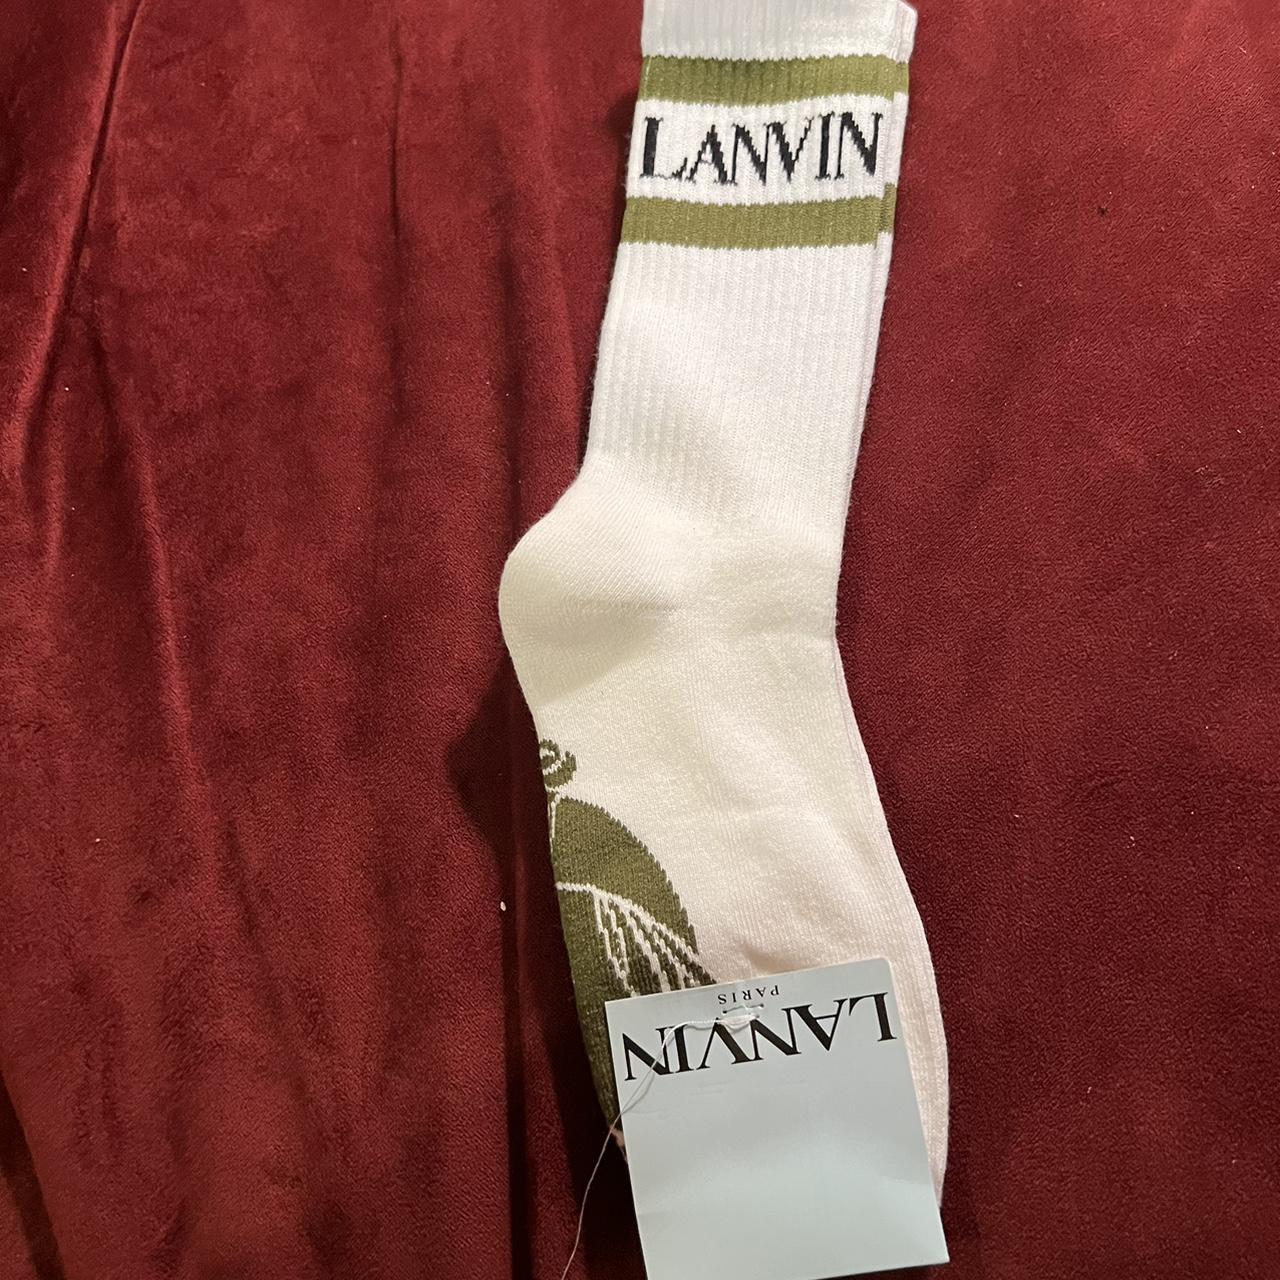 Lanvin Men's Accessory